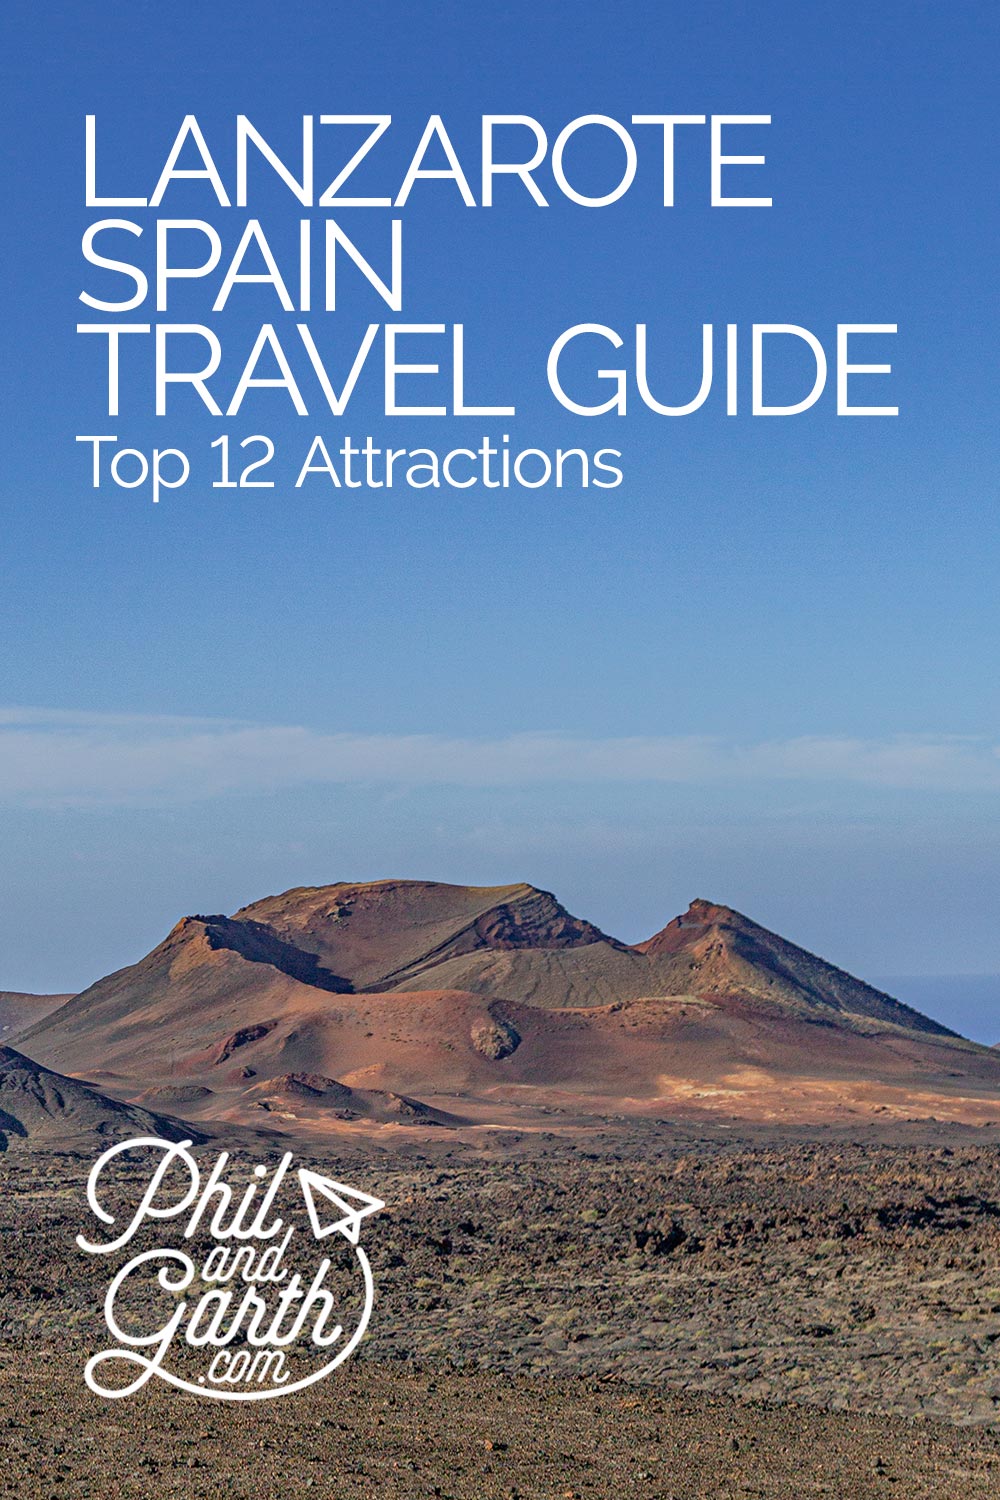 Top 12 Attractions of Lanzarote